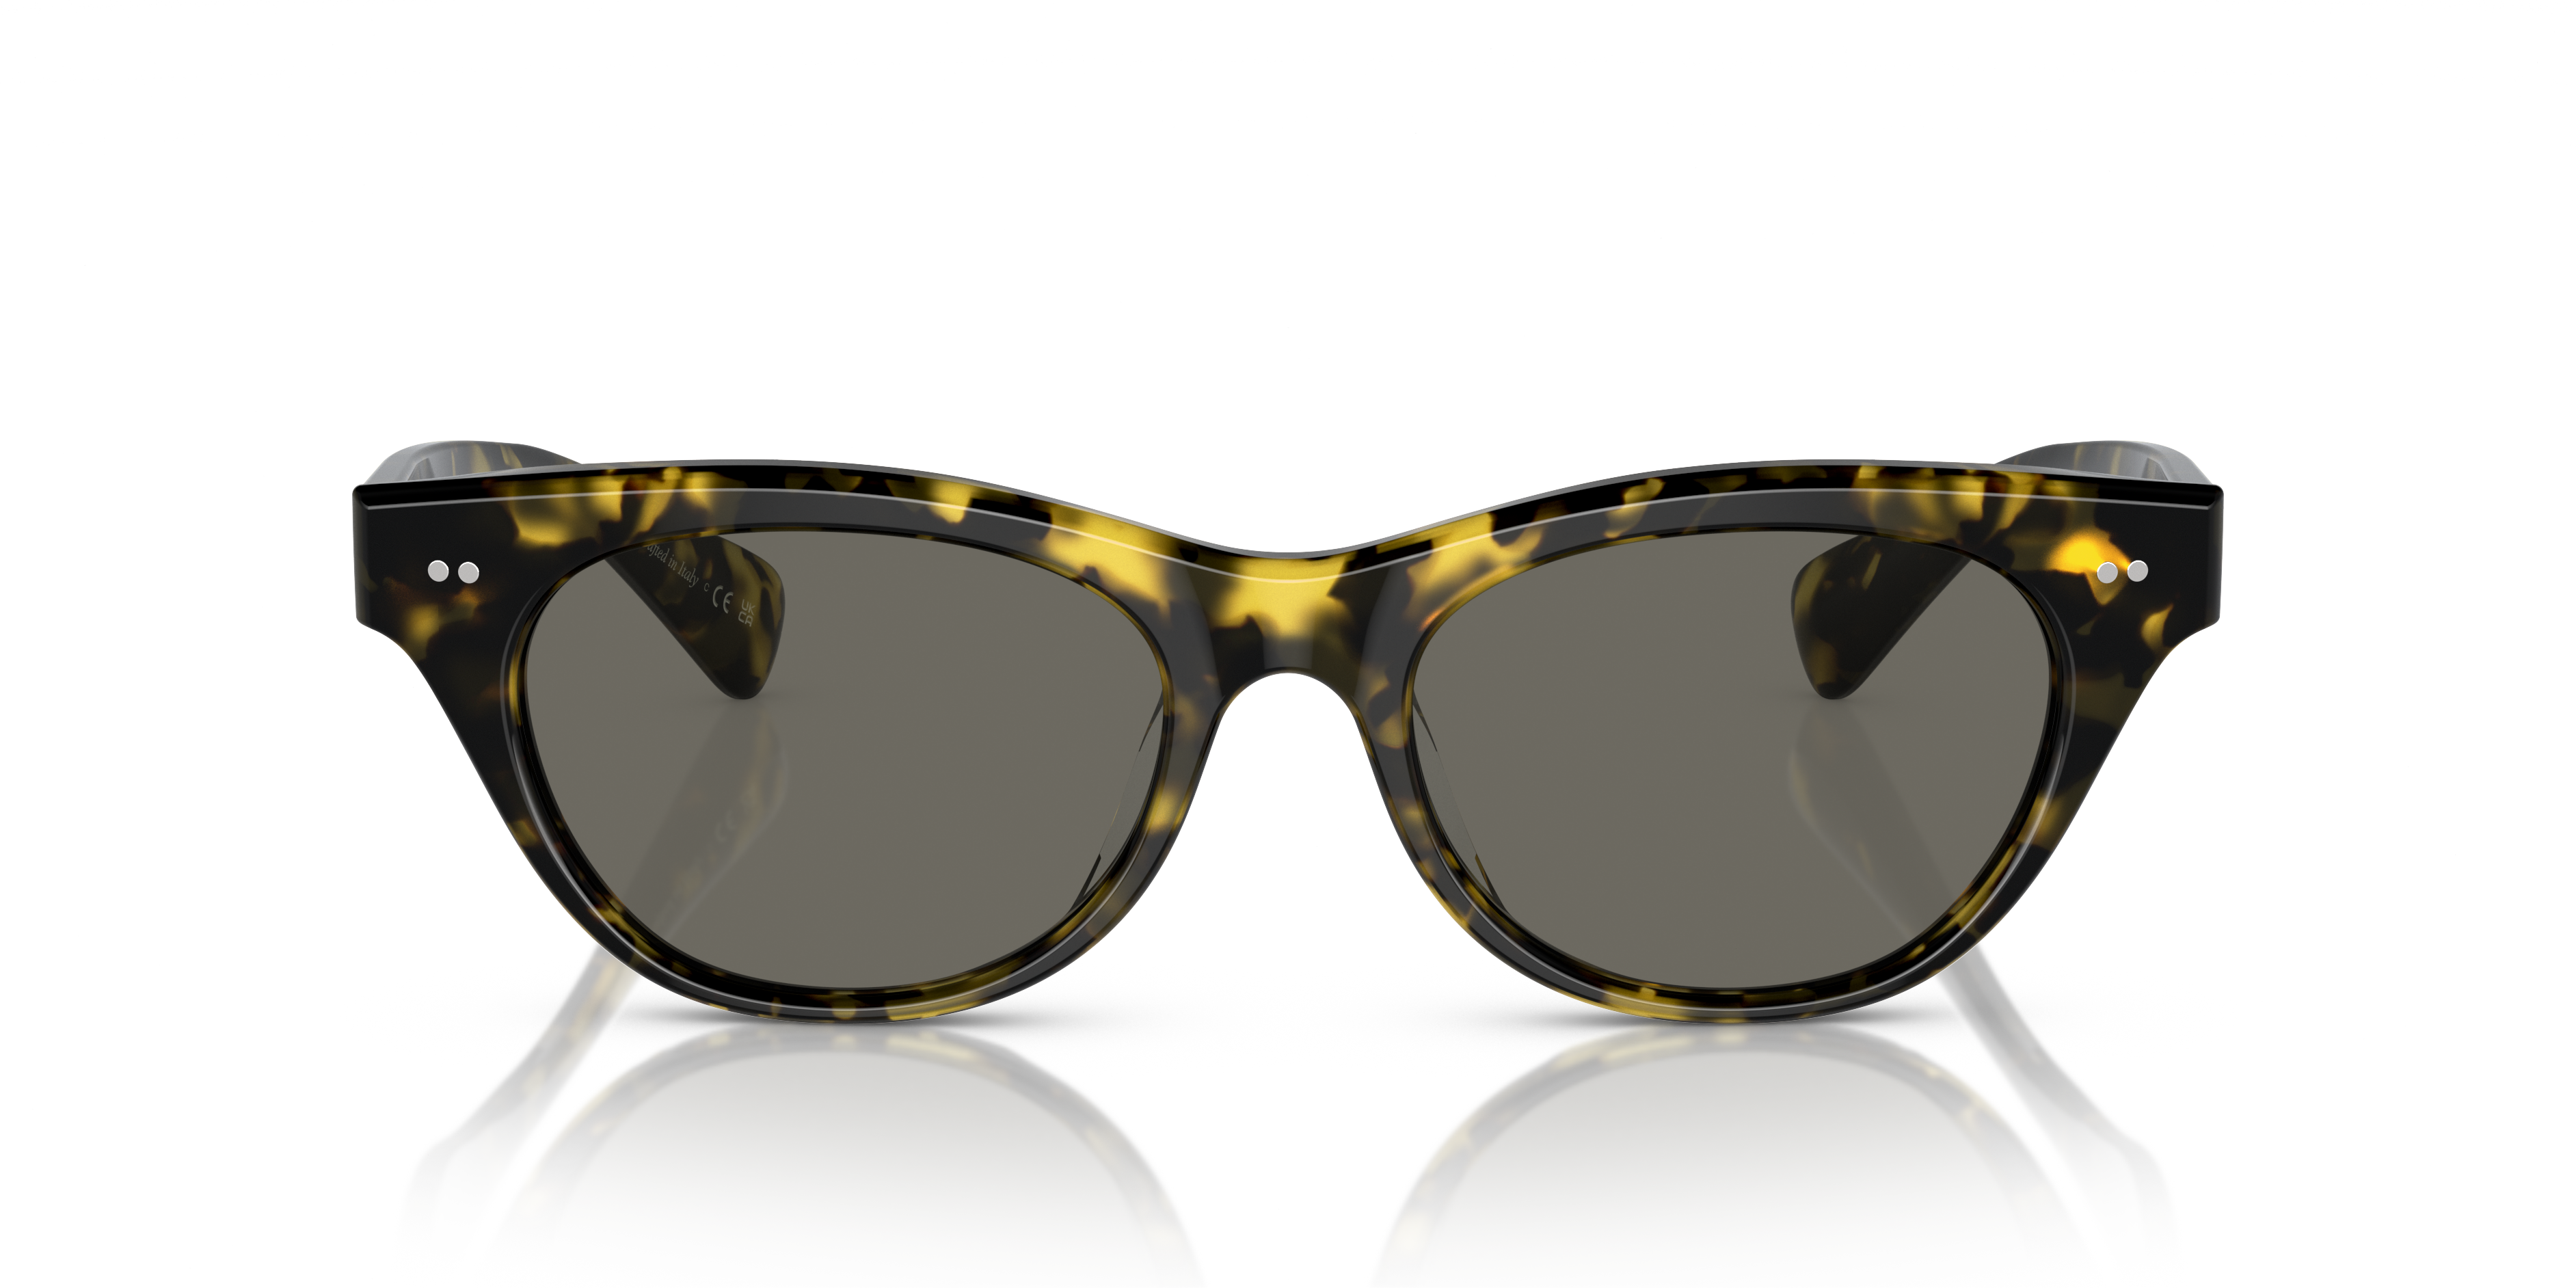 Eyeglasses Online: Buy Latest Glasses Frames, Spectacles & Chashma India |  Lenskart